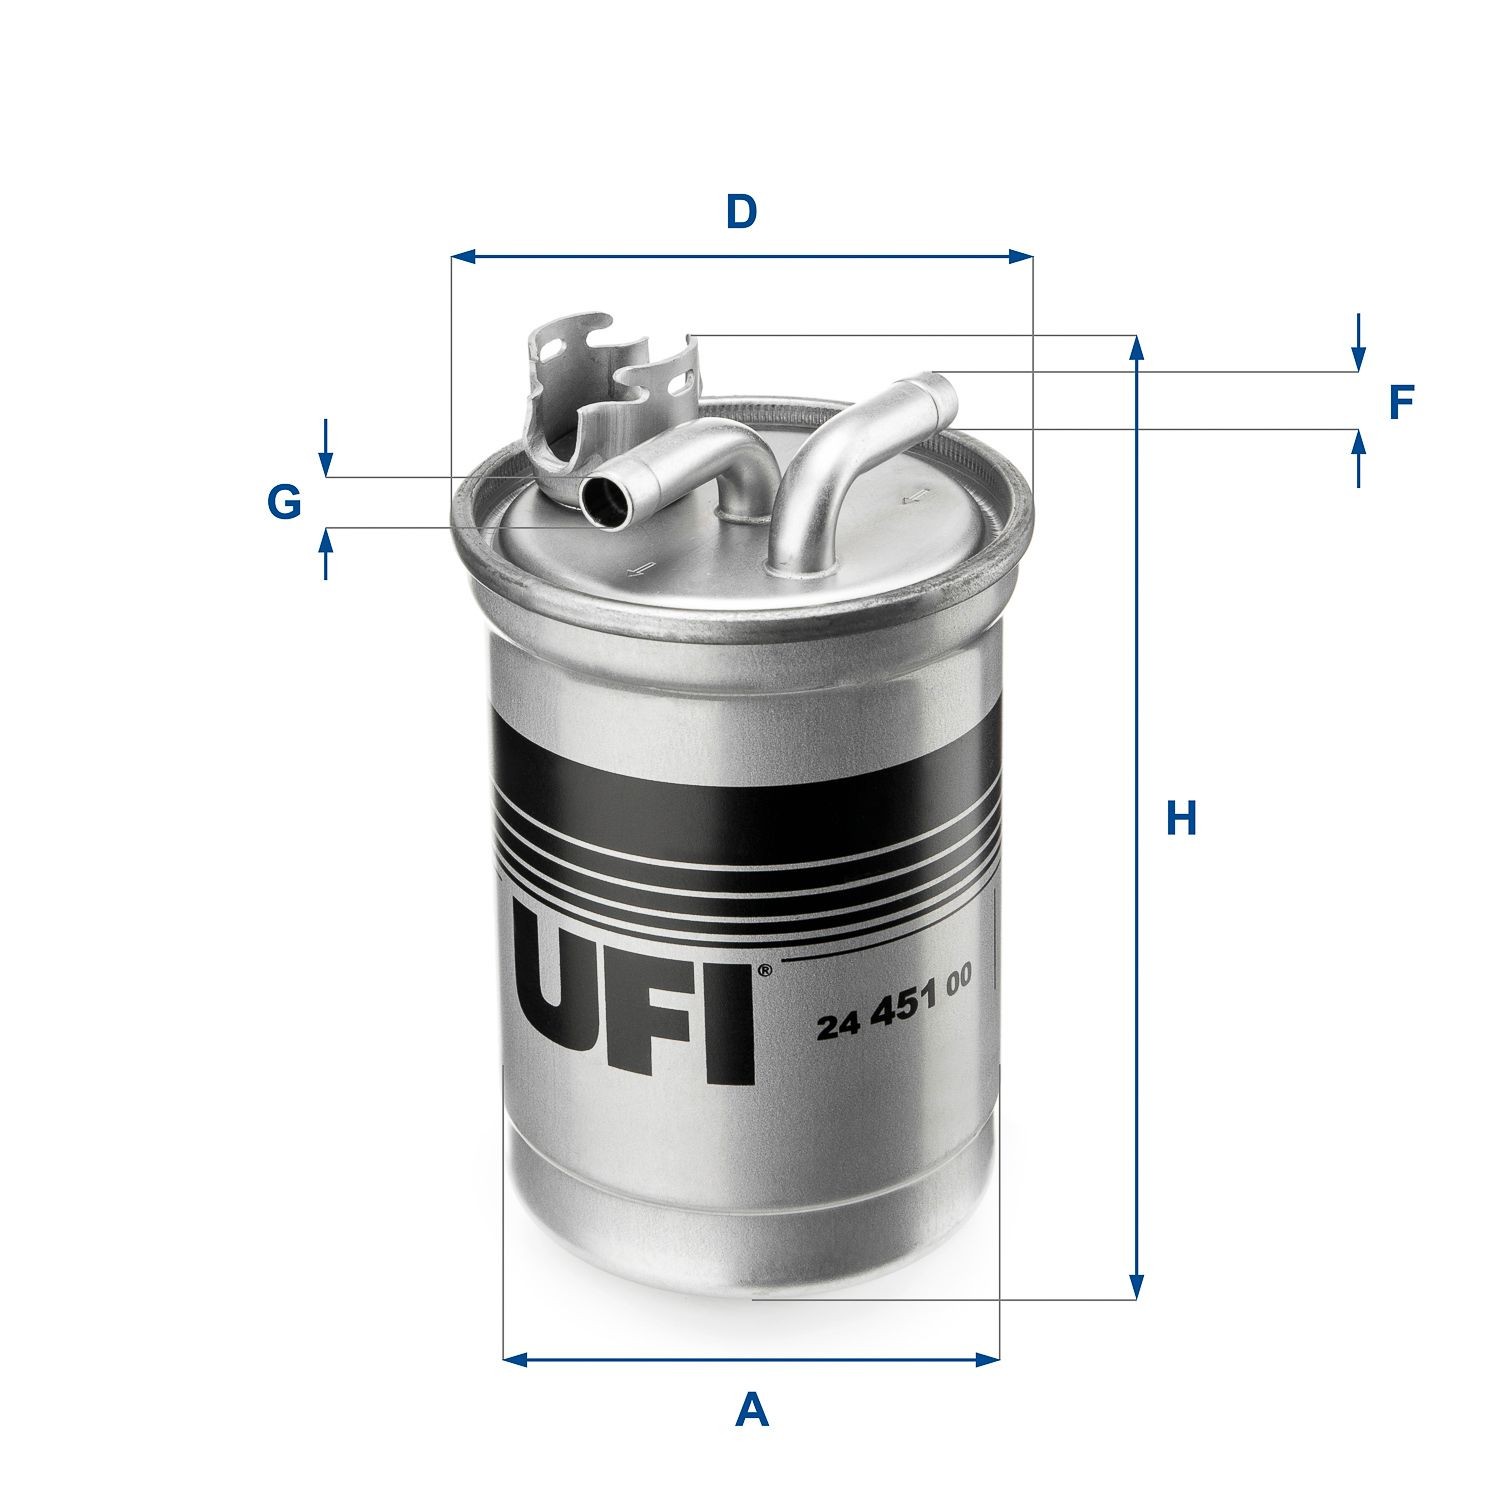 UFI 24.451.00 Fuel filter Filter Insert